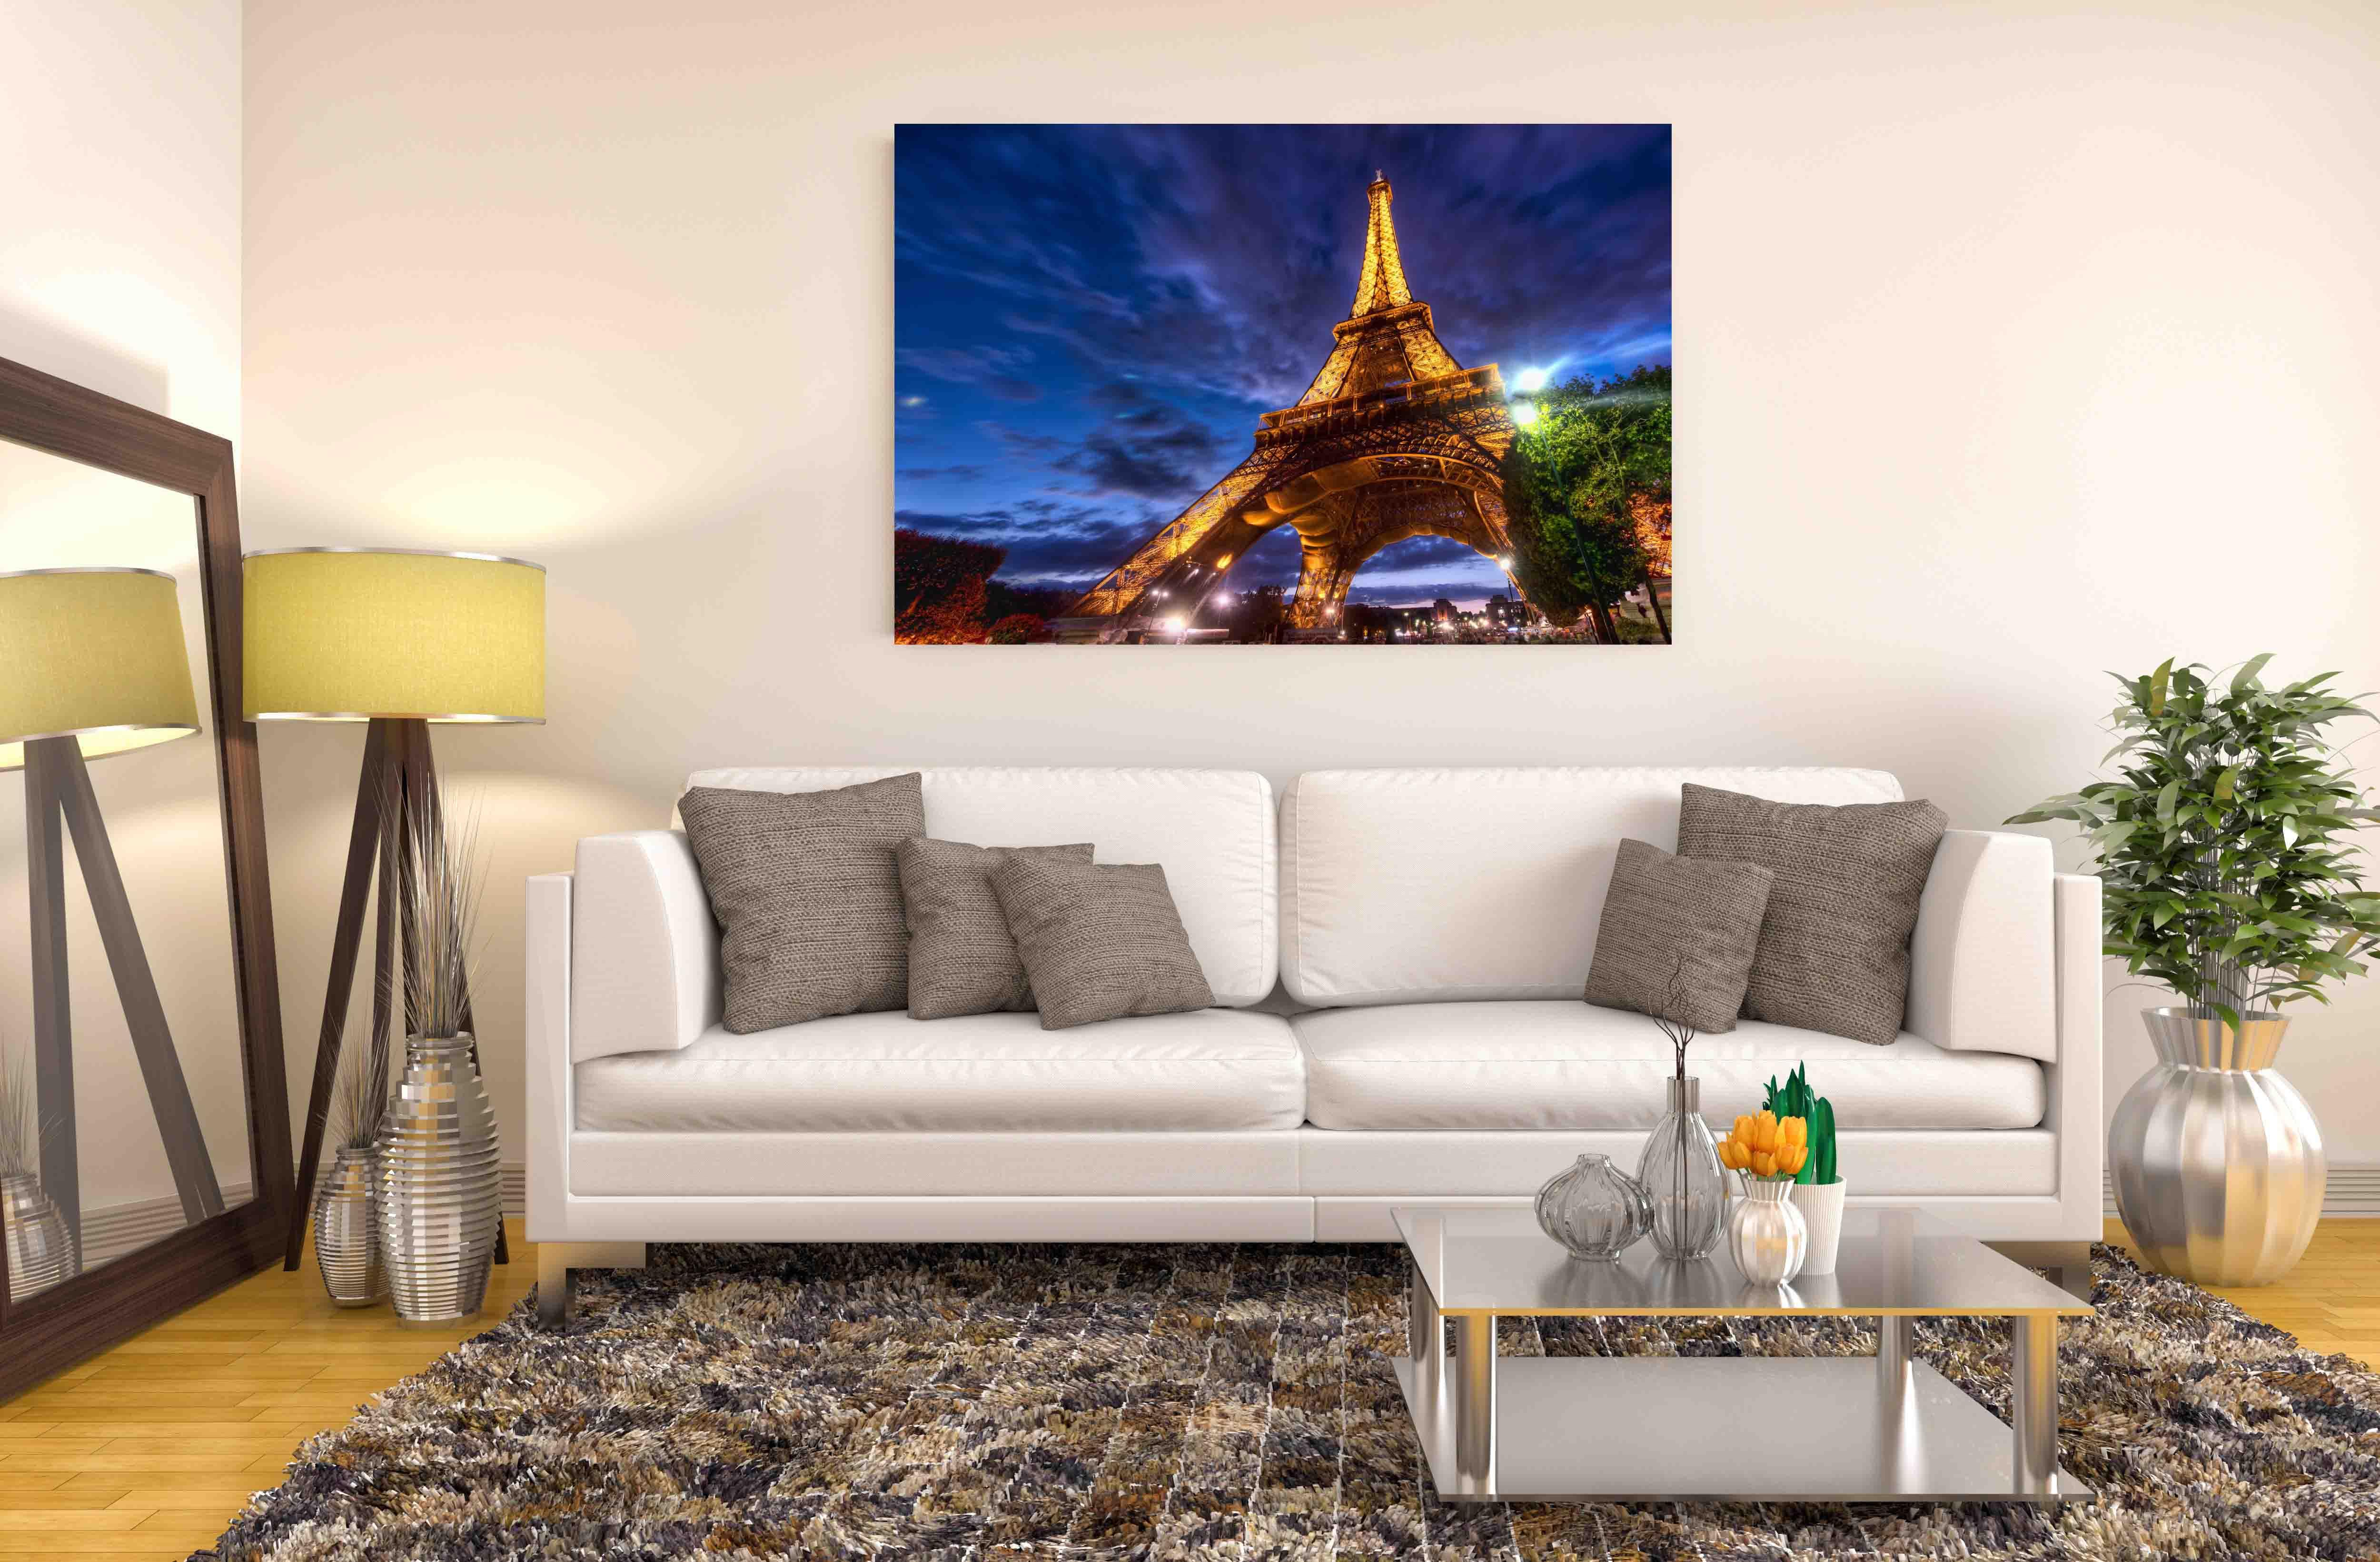 Bild Foto - Eiffelturm in Paris 2